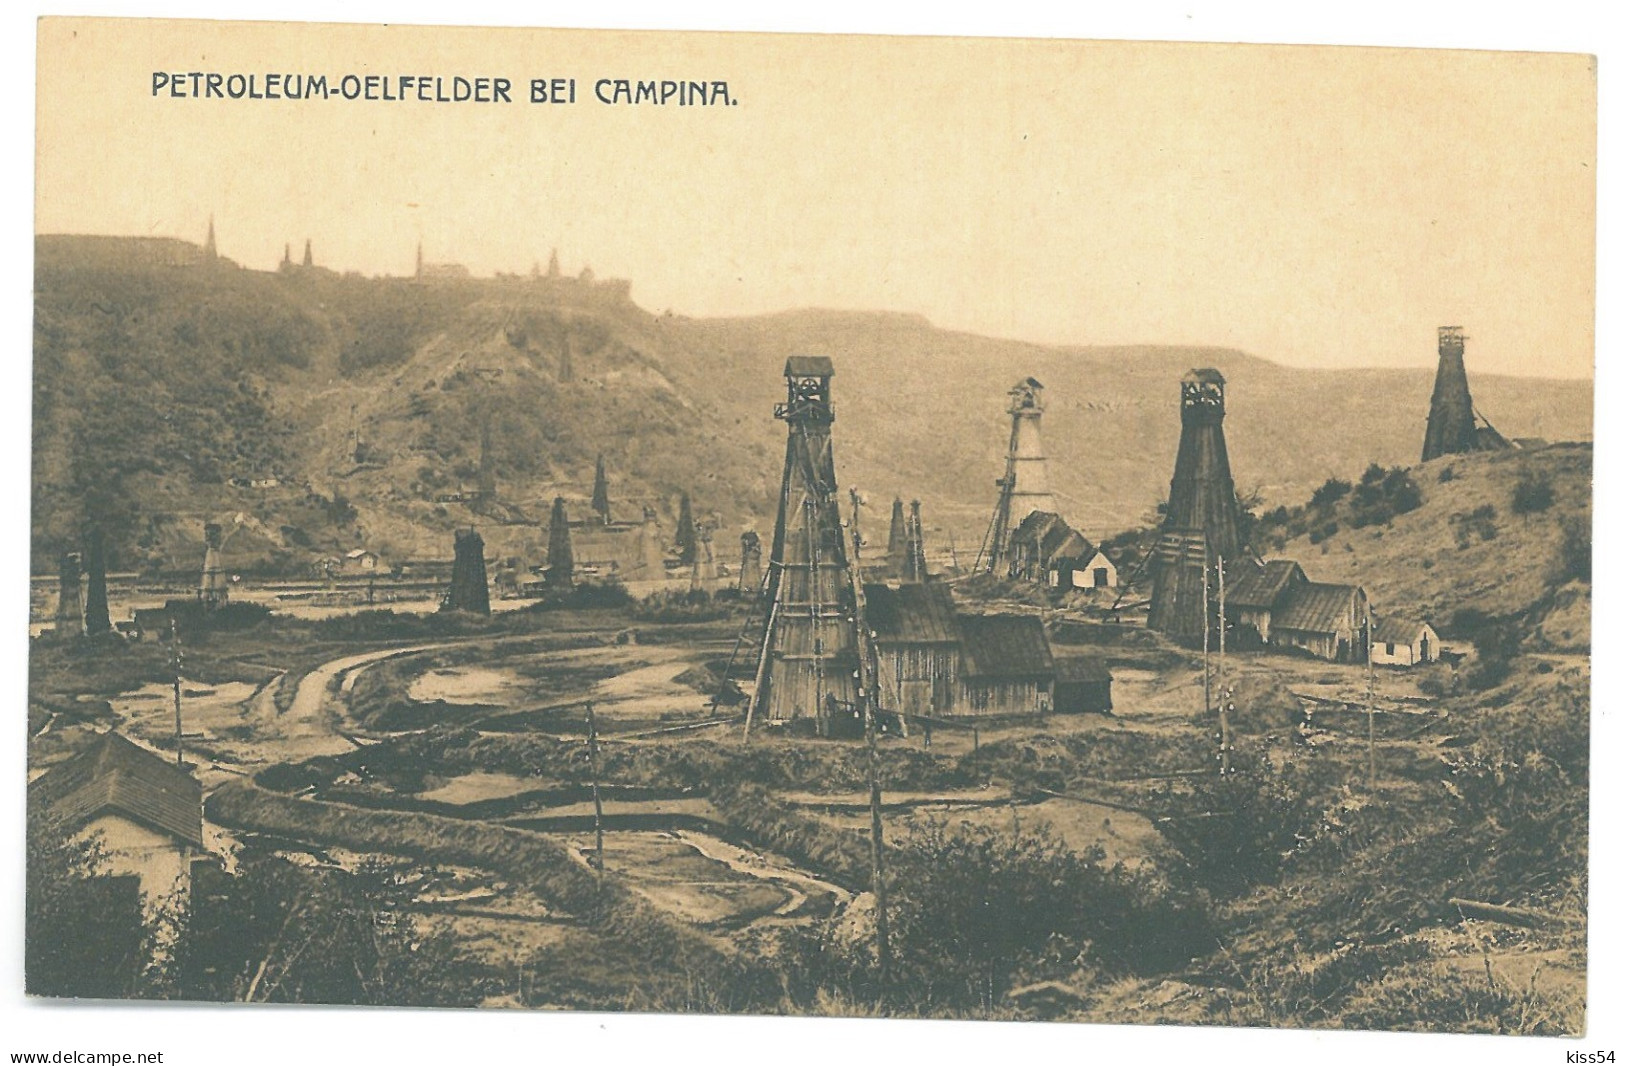 RO 89 - 25031 CAMPINA, Prahova, Oil Wells, Romania - Old Postcard - Unused - Roemenië